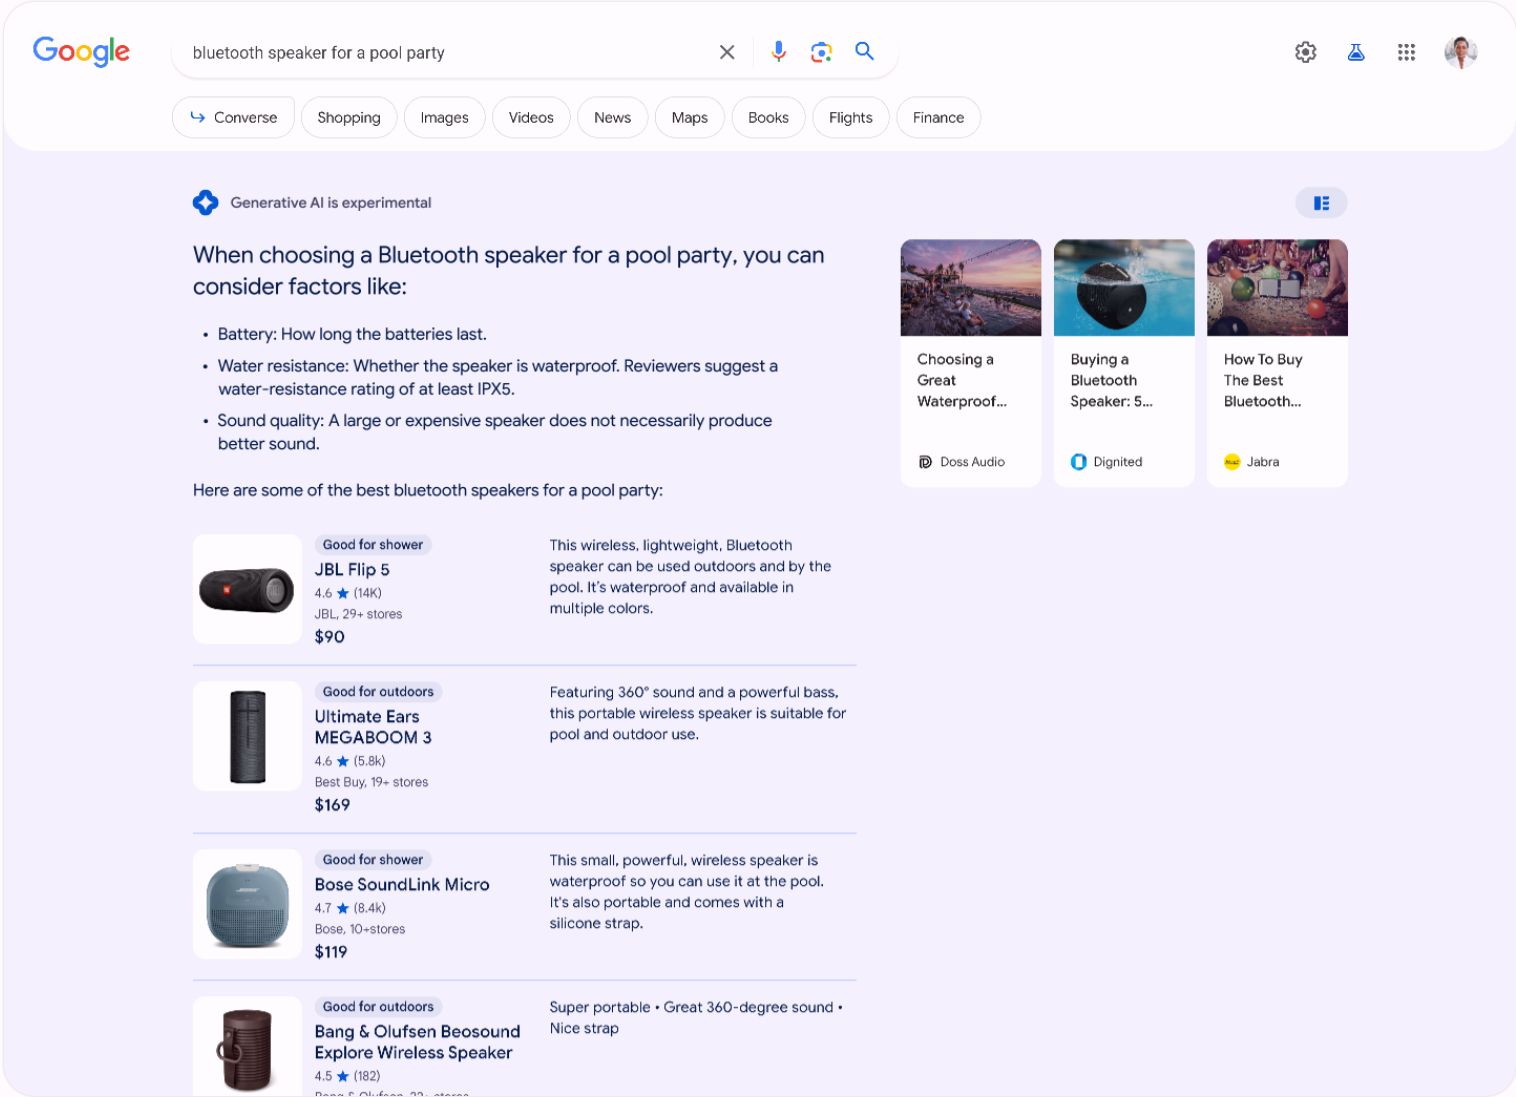 Google Search mới chính thức ra mắt, tích hợp công nghệ AI để hiểu được câu hỏi và ý định của người dùng - Ảnh 4.